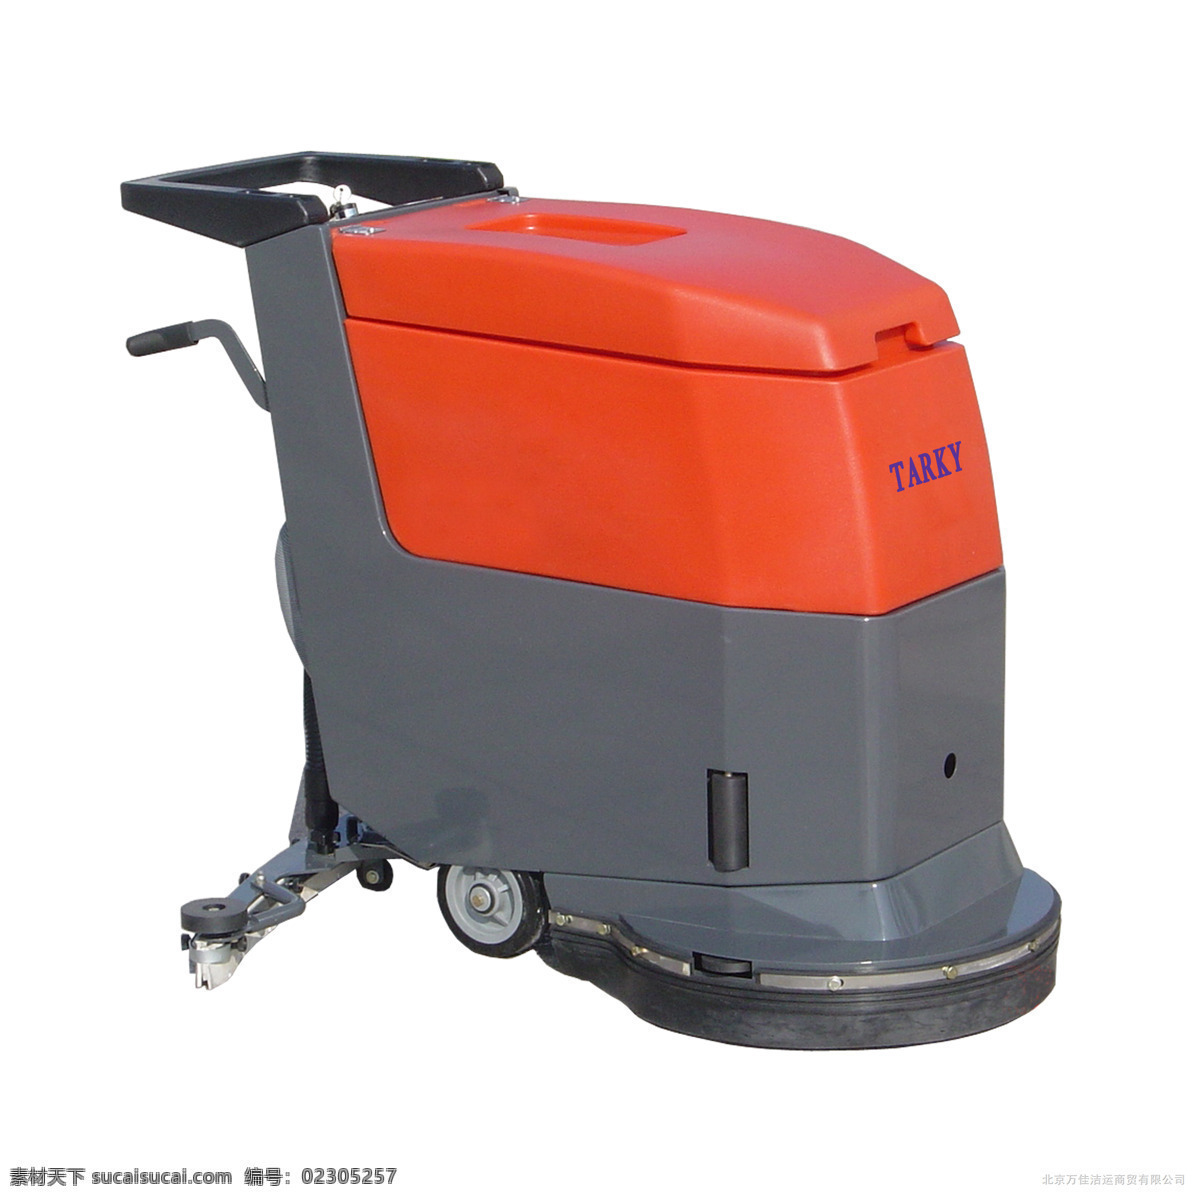 洗地机 现代 生活 居家 机器 高科技 清洁 家居生活 生活百科